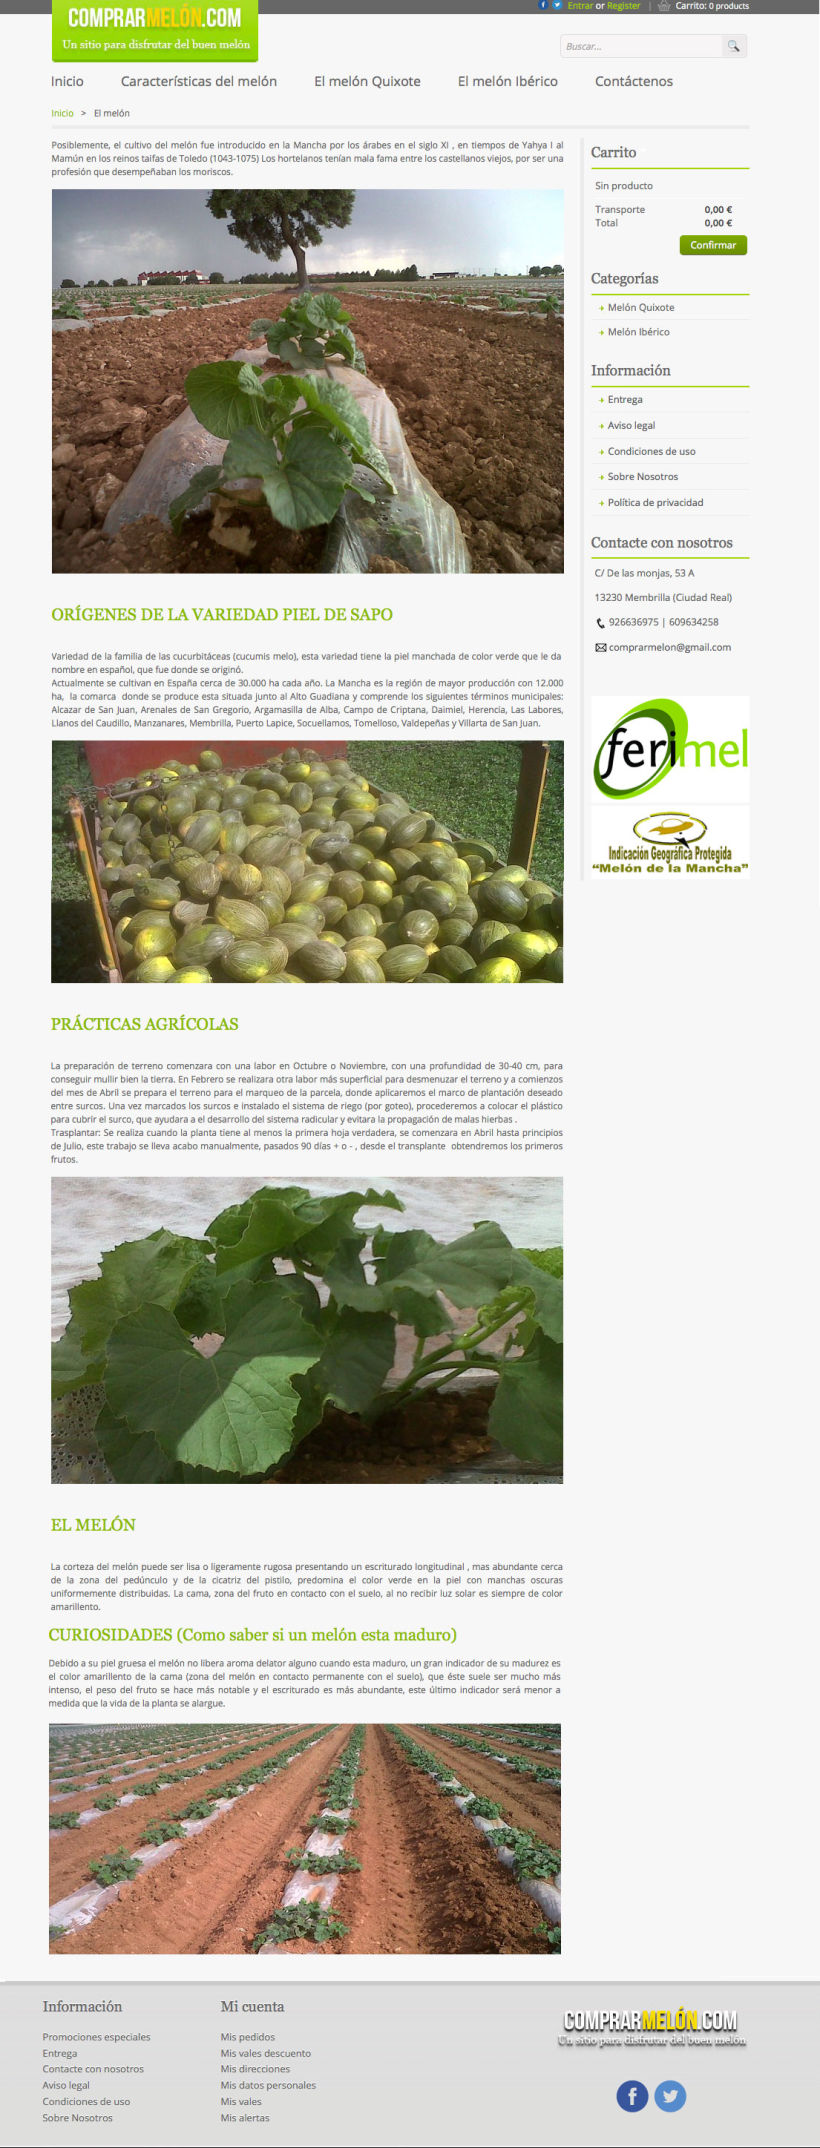 Comprarmelon - Tienda Online de venta de melones 2